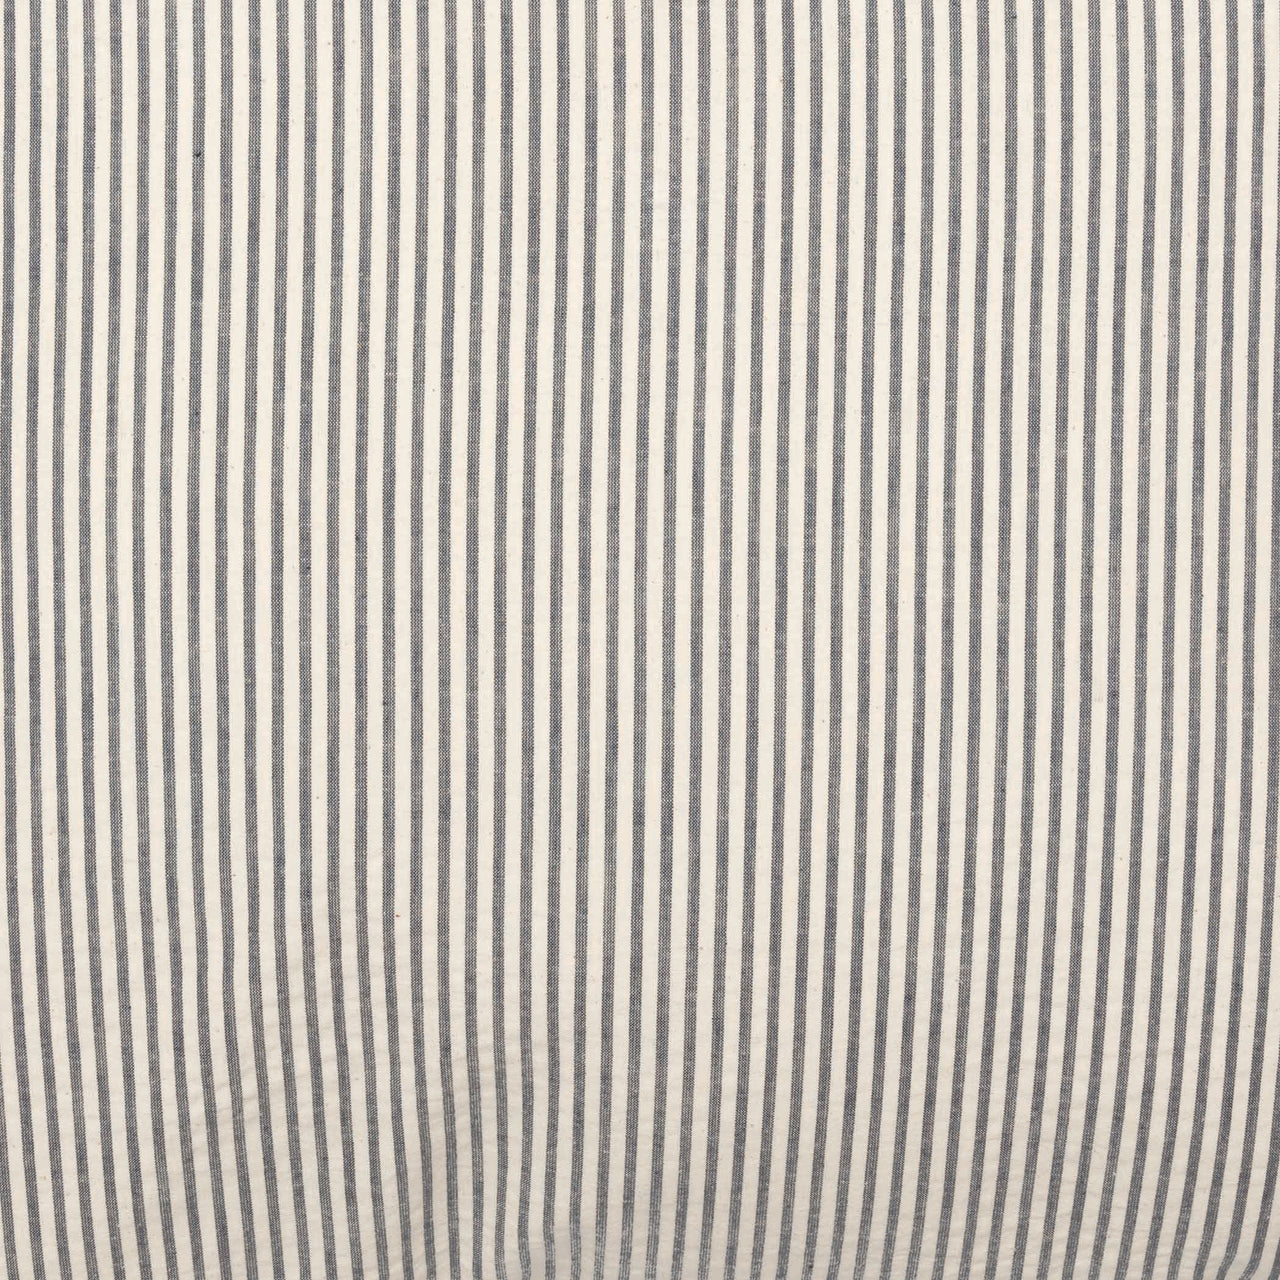 Hatteras Seersucker Blue Ticking Stripe Fabric Euro Sham 26x26 VHC Brands